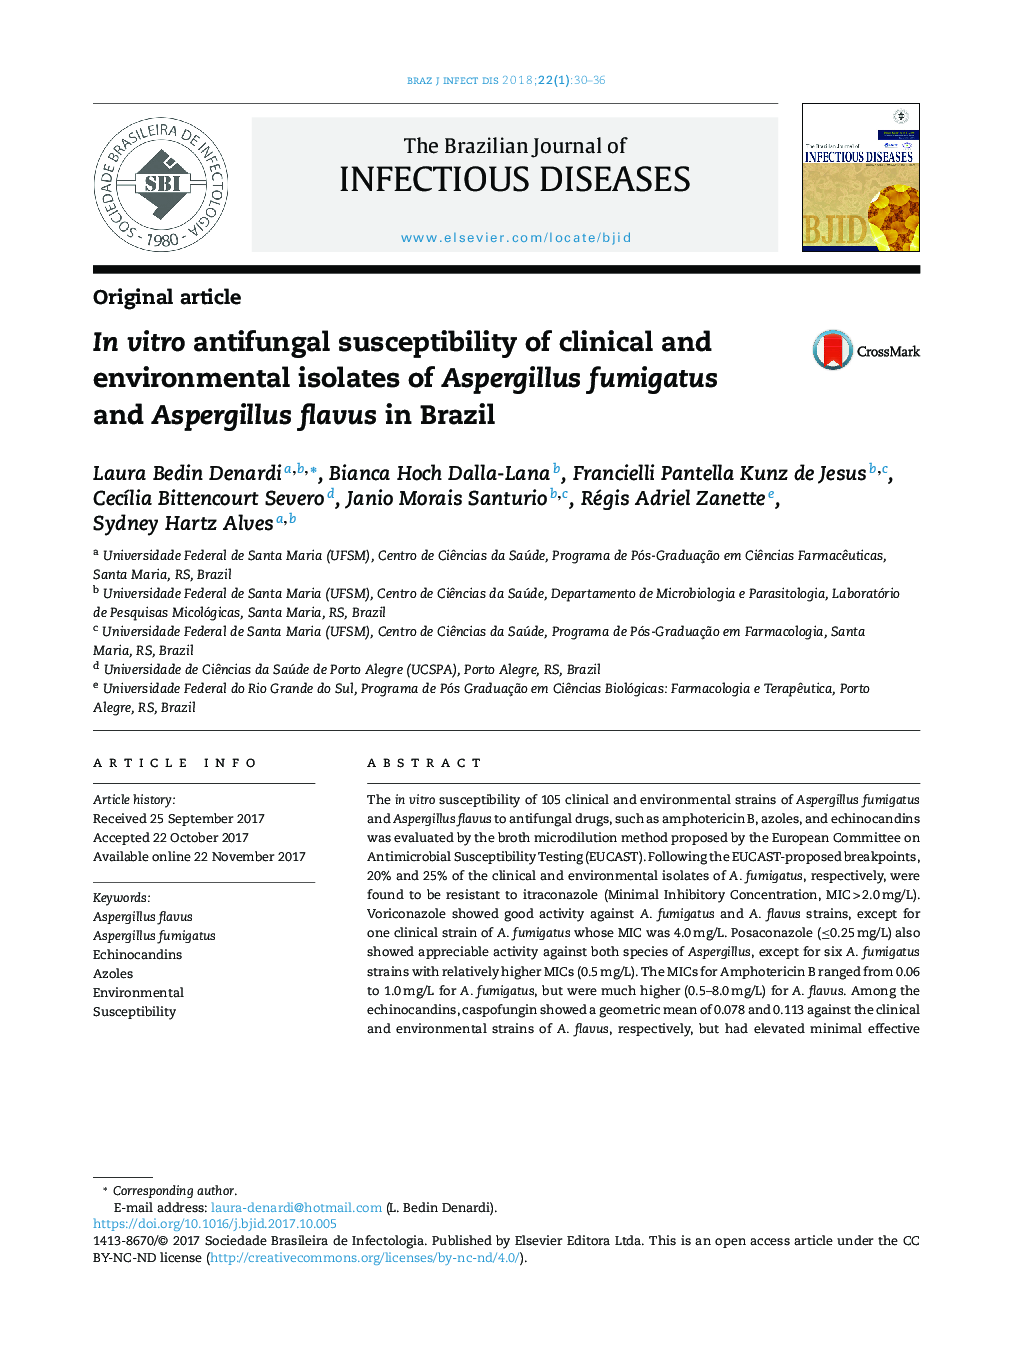 In vitro antifungal susceptibility of clinical and environmental isolates of Aspergillus fumigatus and Aspergillus flavus in Brazil